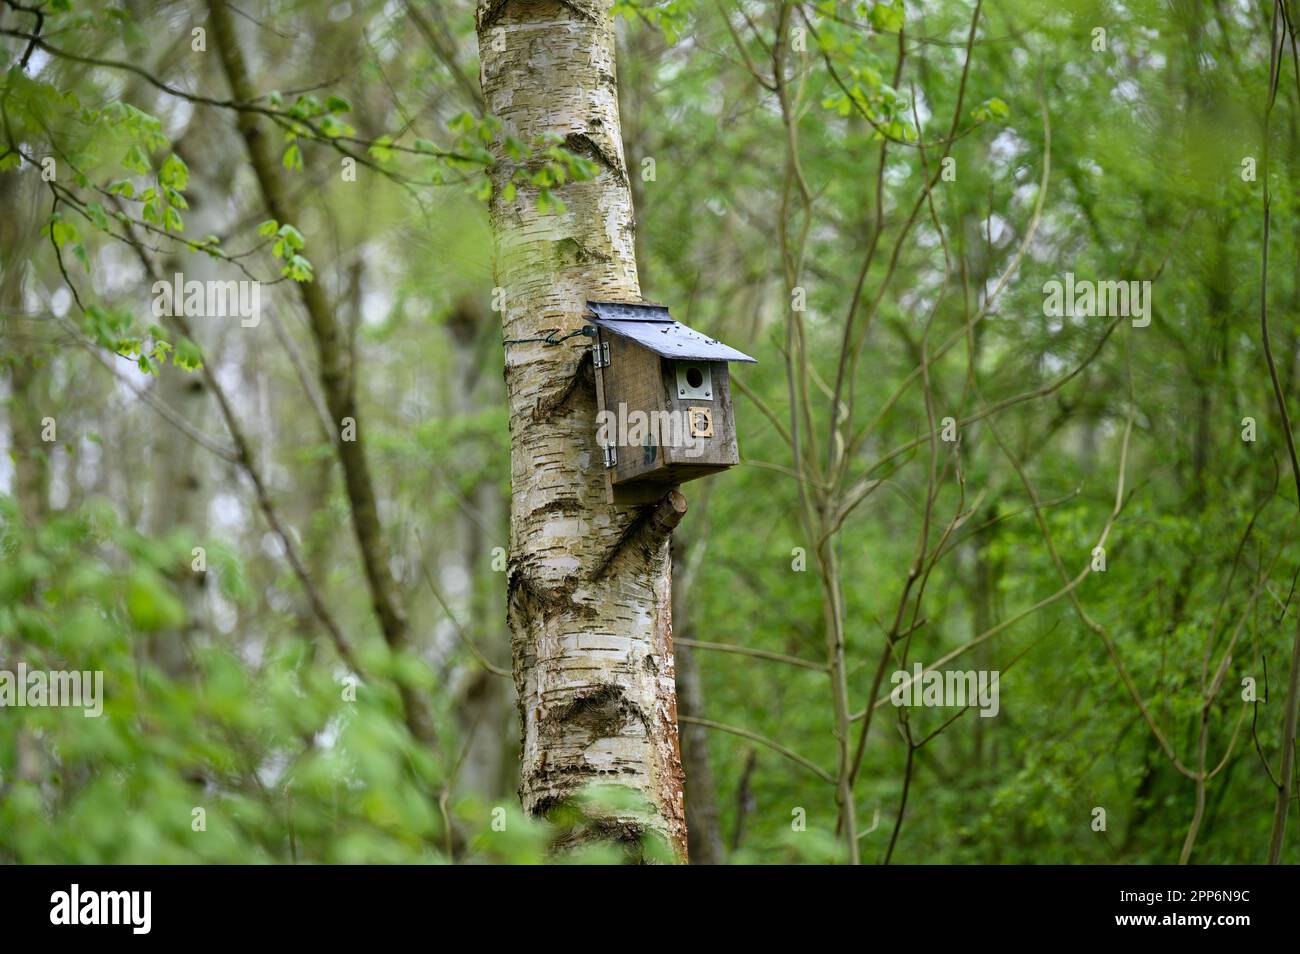 Scatole di nido di legno su alberi in una riserva naturale del consiglio per incoraggiare gli uccelli selvatici a riprodursi nella zona. Foto Stock